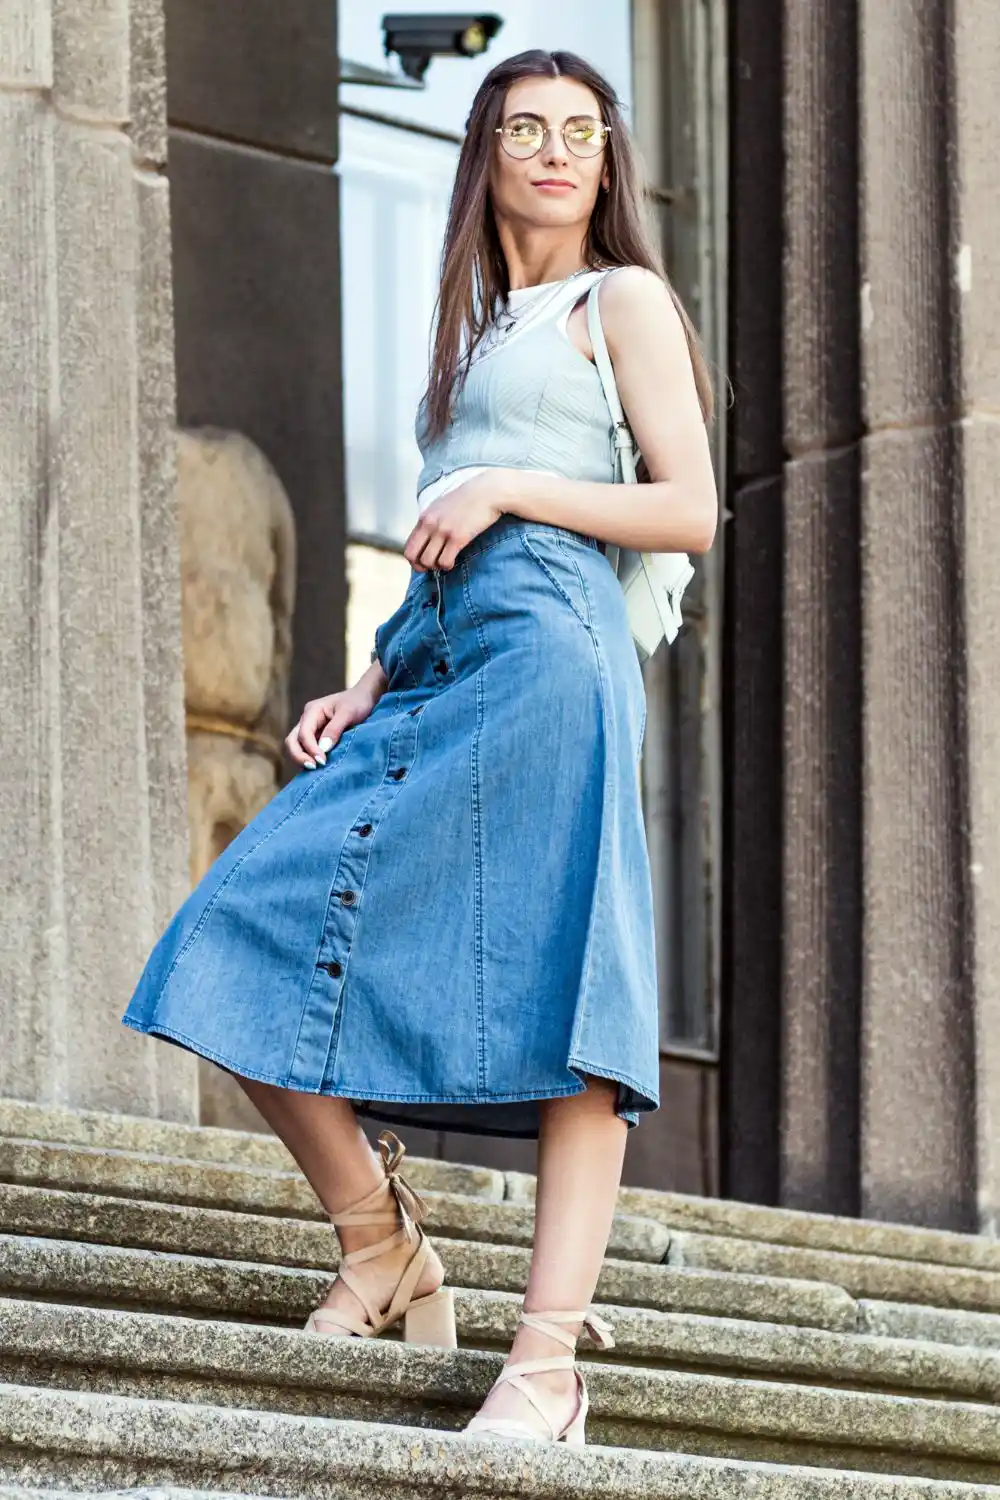 Woman in long denim skirt standing on steps